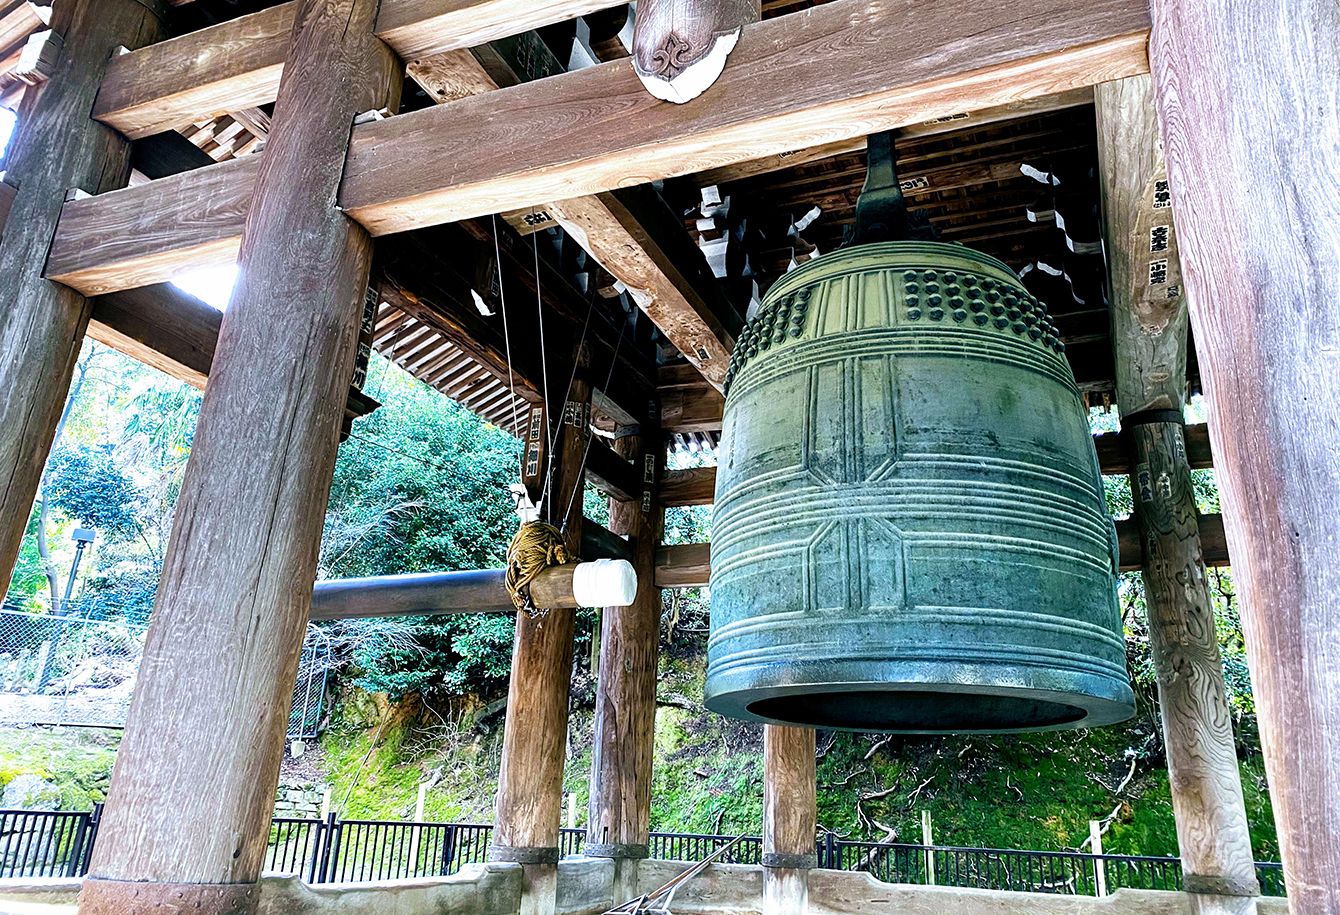 ｢うるさい､やかましい｣なぜ日本人はお寺の鐘に苦情を言うようになったのか